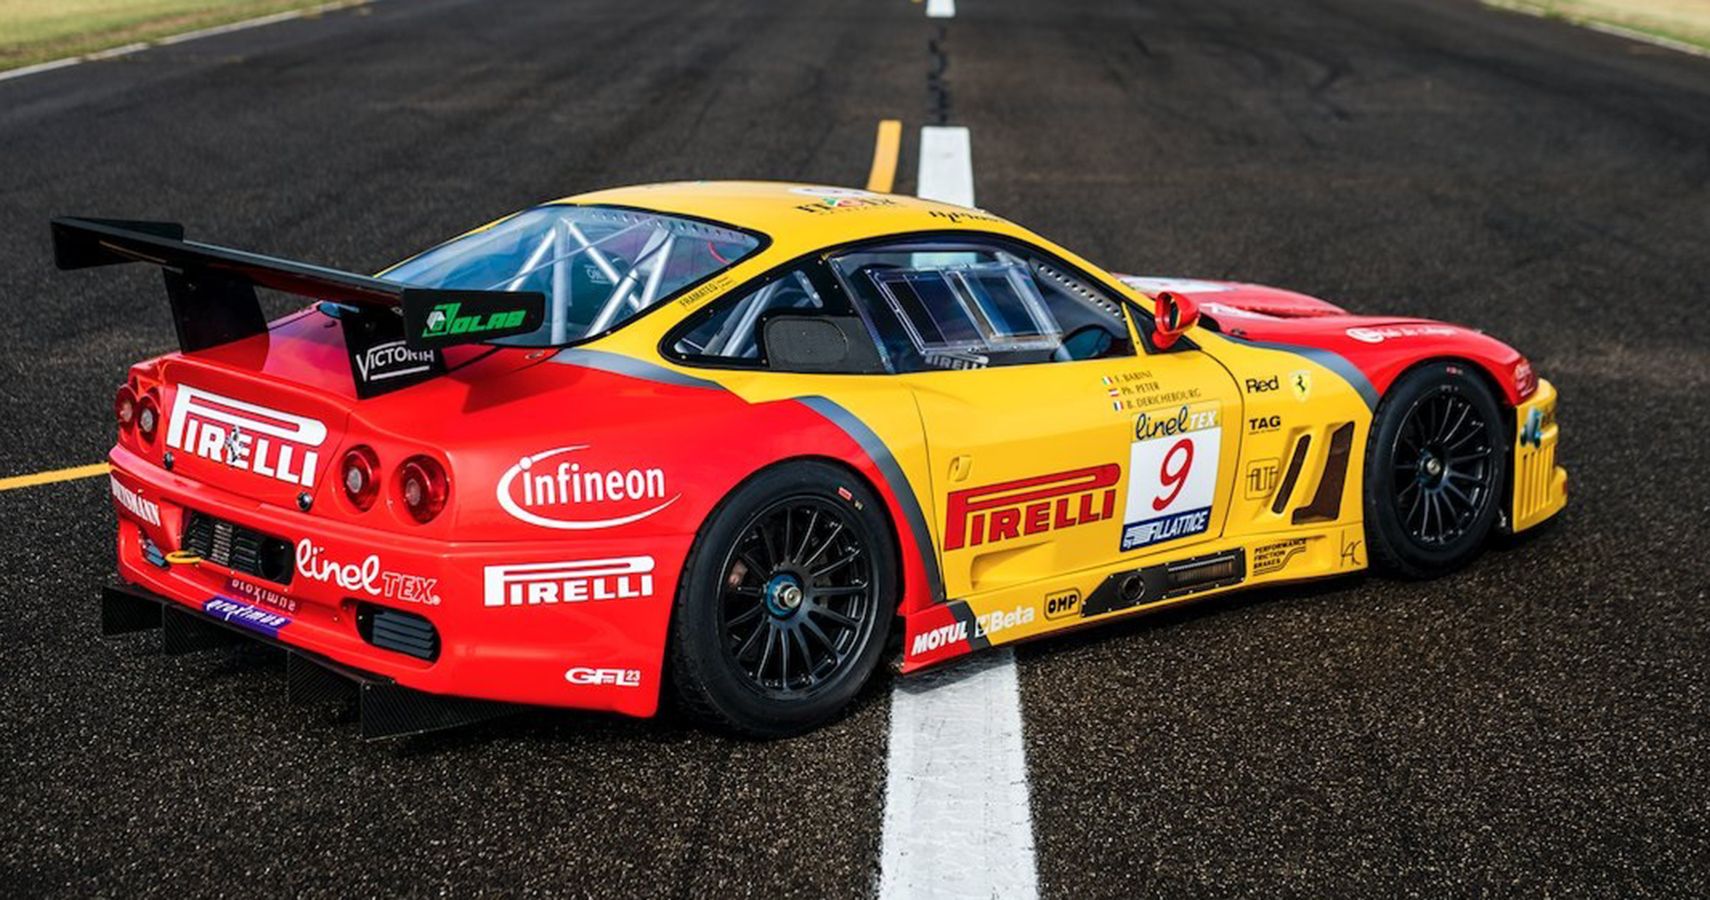 Ferrari 550 GTC 2102 V12 parked